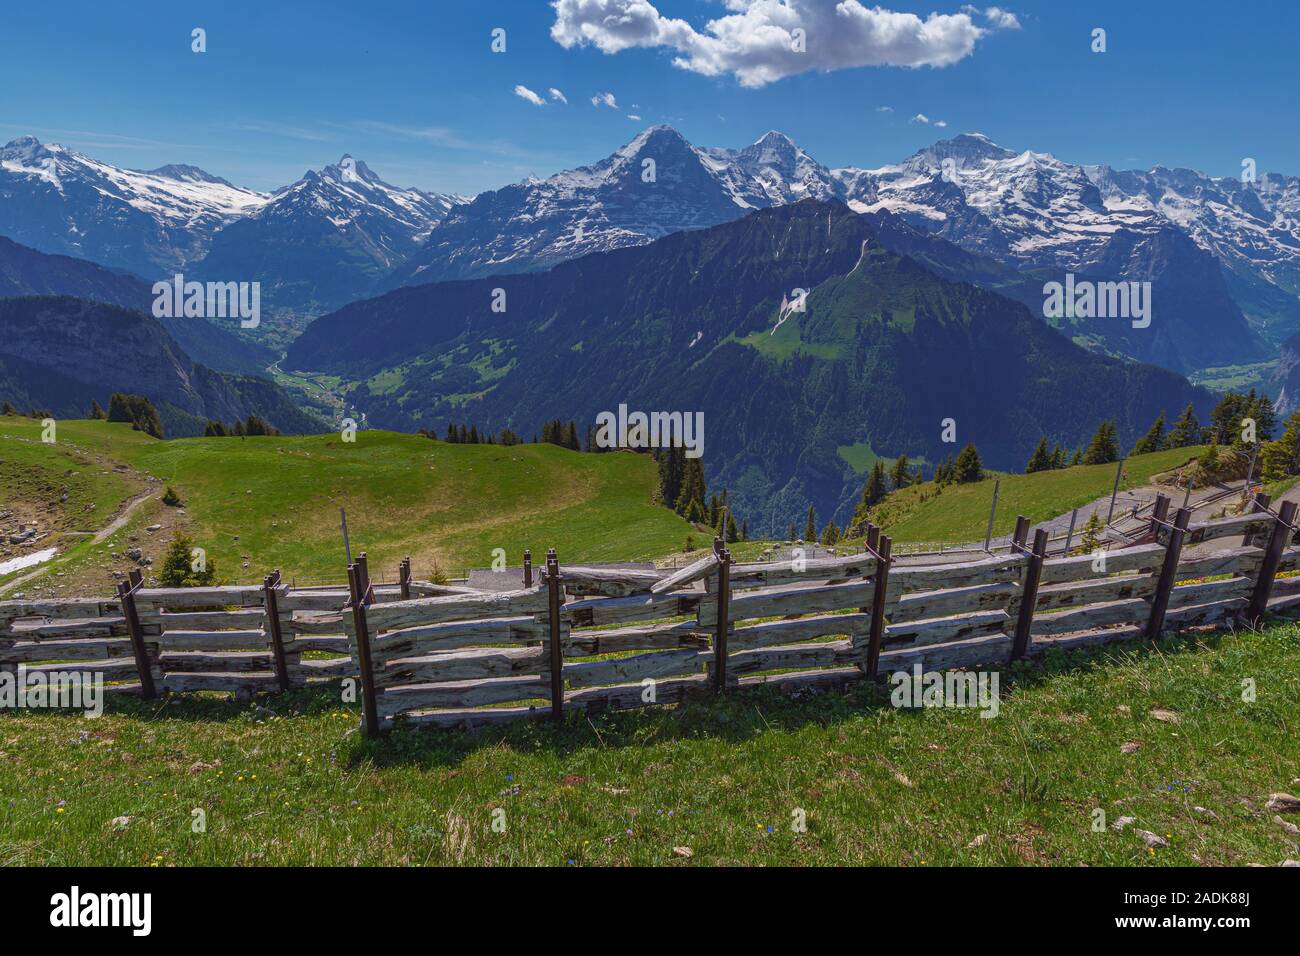 Berge in den Schweizer Alpen mit einem Zaun im Vordergrund Stockfotografie  - Alamy